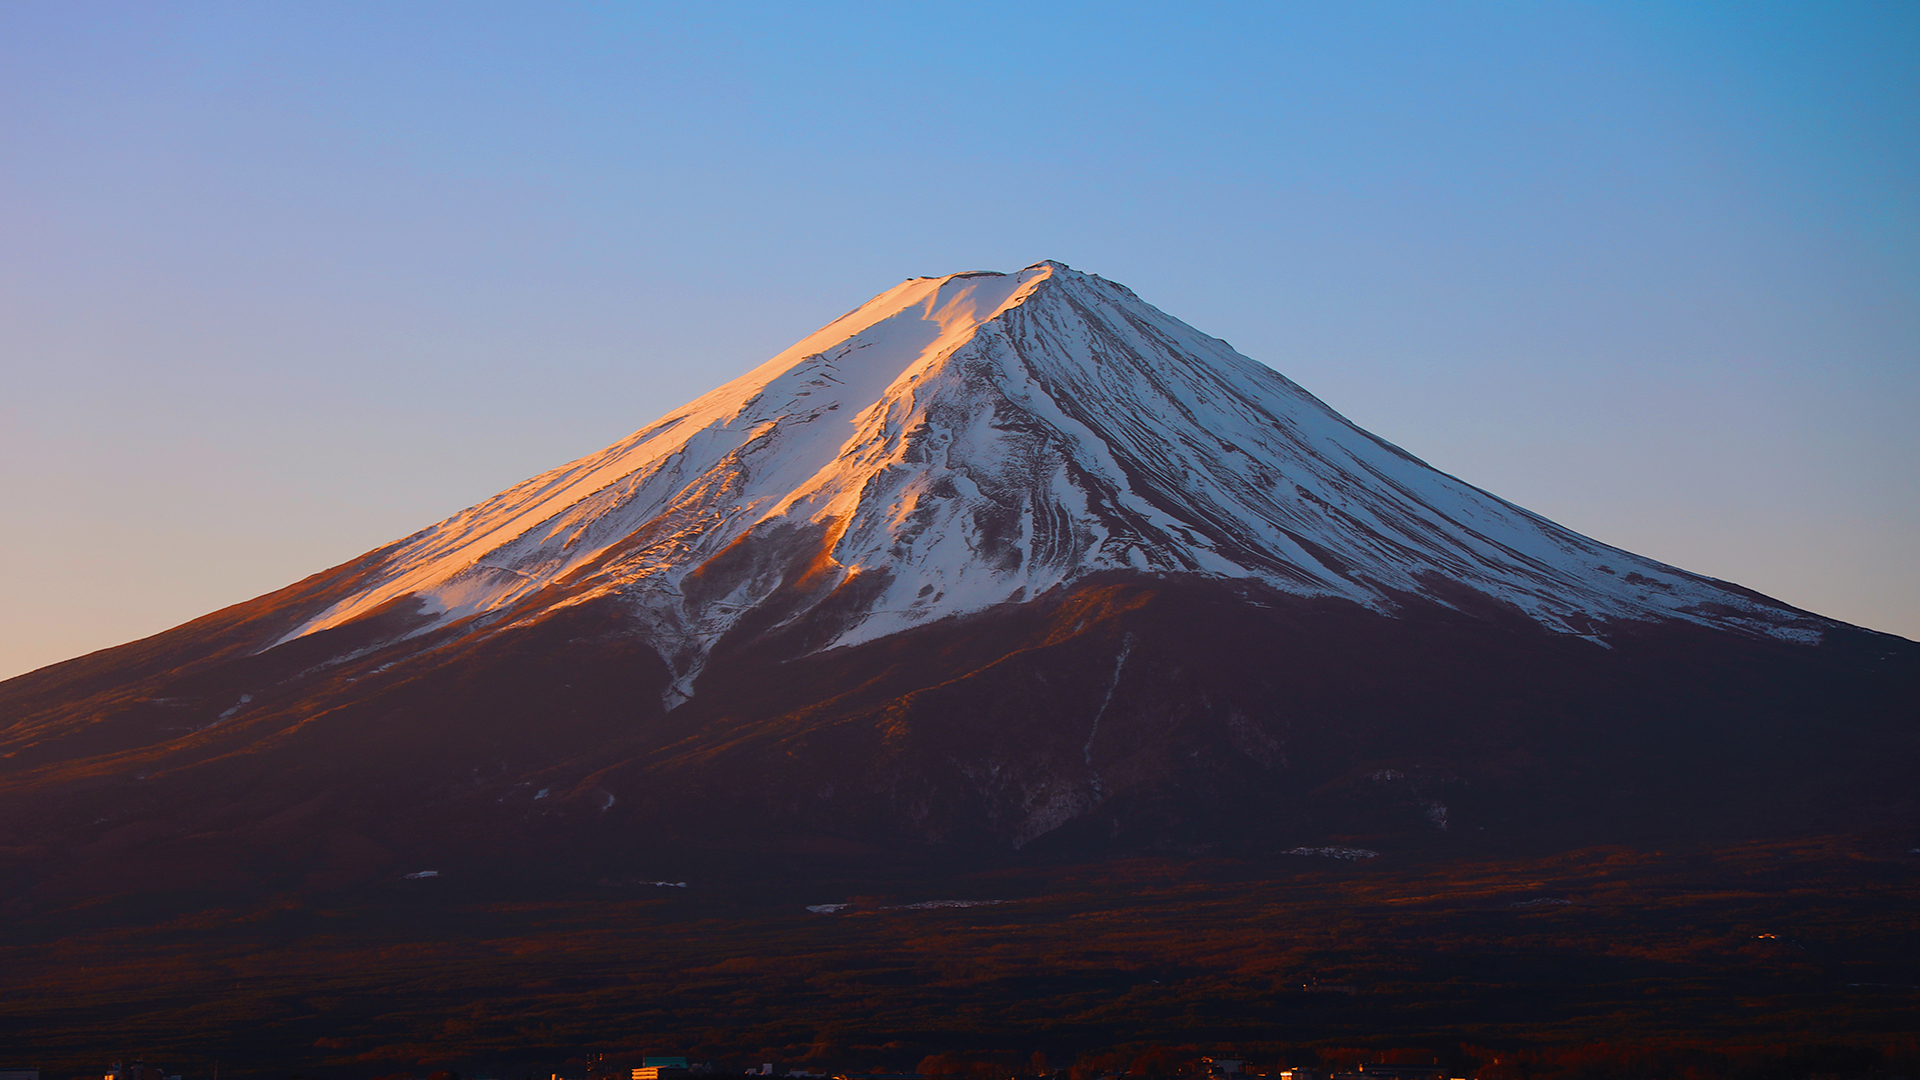 Precious Plastic Mt. Fuji